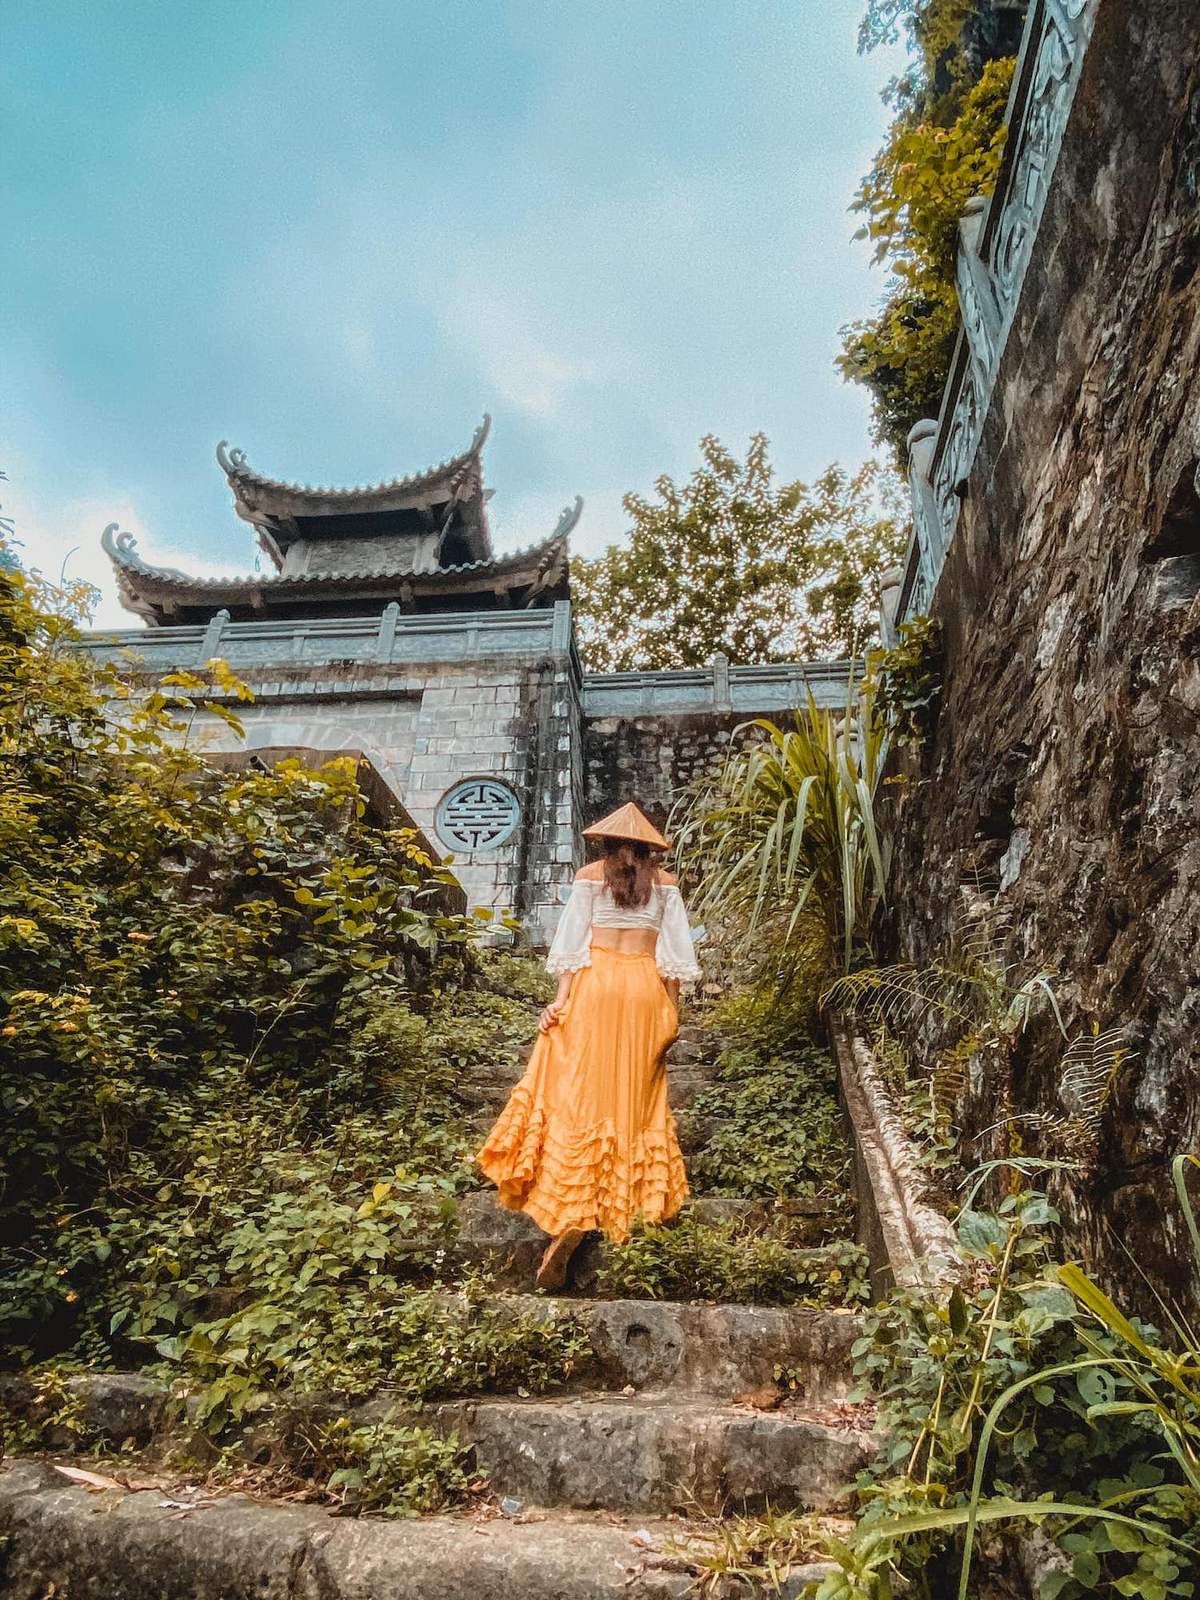 Tận hưởng những bức ảnh đẹp tuyệt vời của những người du lịch đến tham quan Ninh Bình, một khu vực đầy đủ những công trình kiến trúc đẹp như Vân Long, Tam Cốc, Bái Đính và Tràng An. Xem những bức ảnh để bạn có thể thưởng thức vẻ đẹp của nơi này một cách đầy đủ hơn.